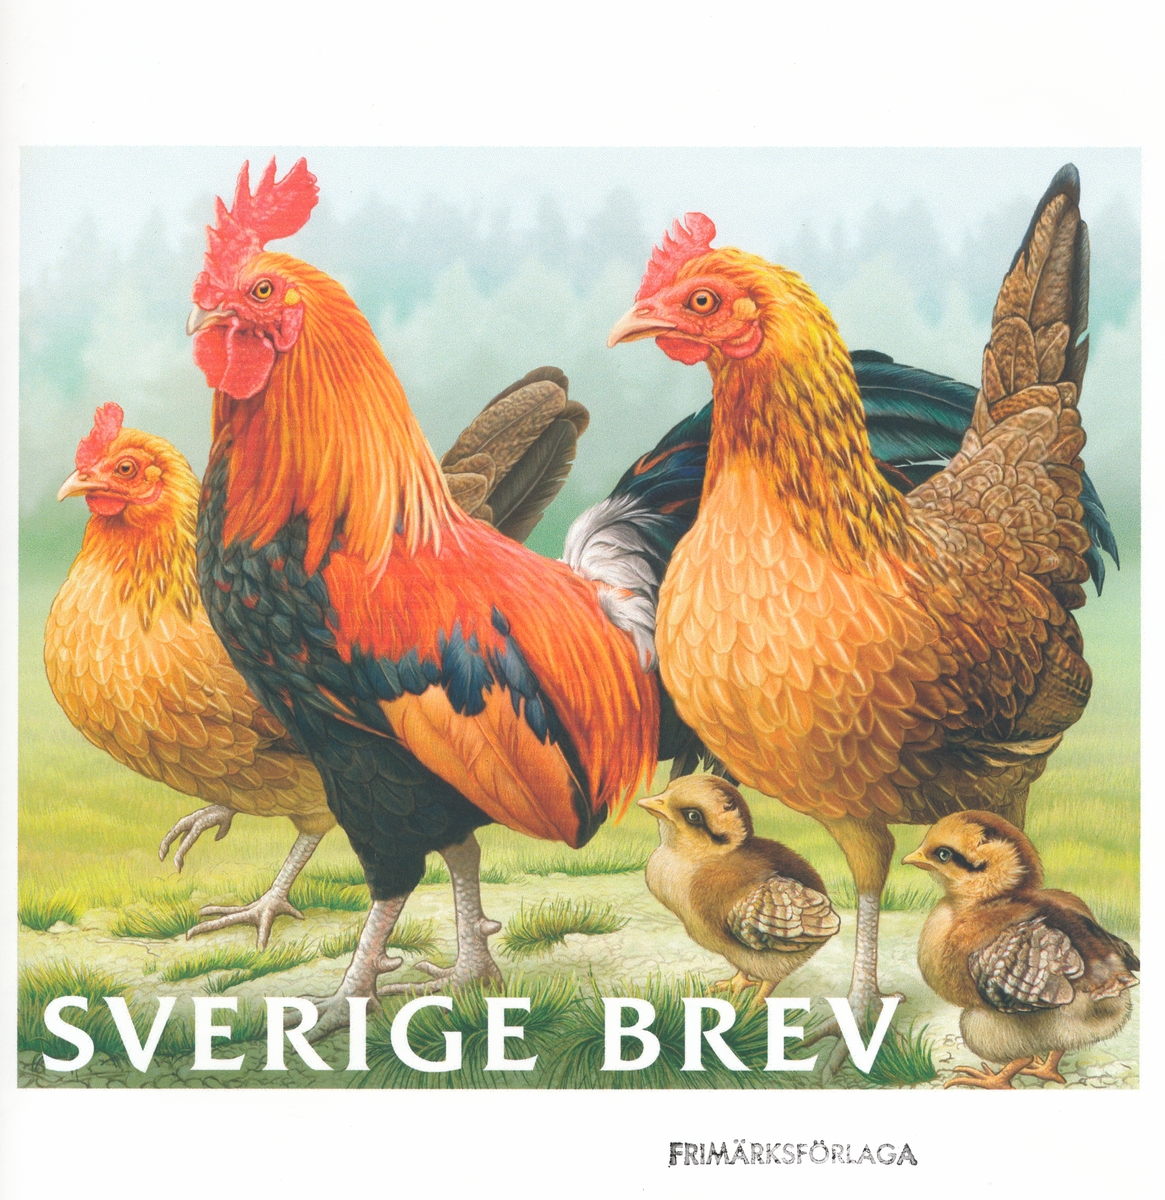 Förlagor som visar olika svenska hönsraser.